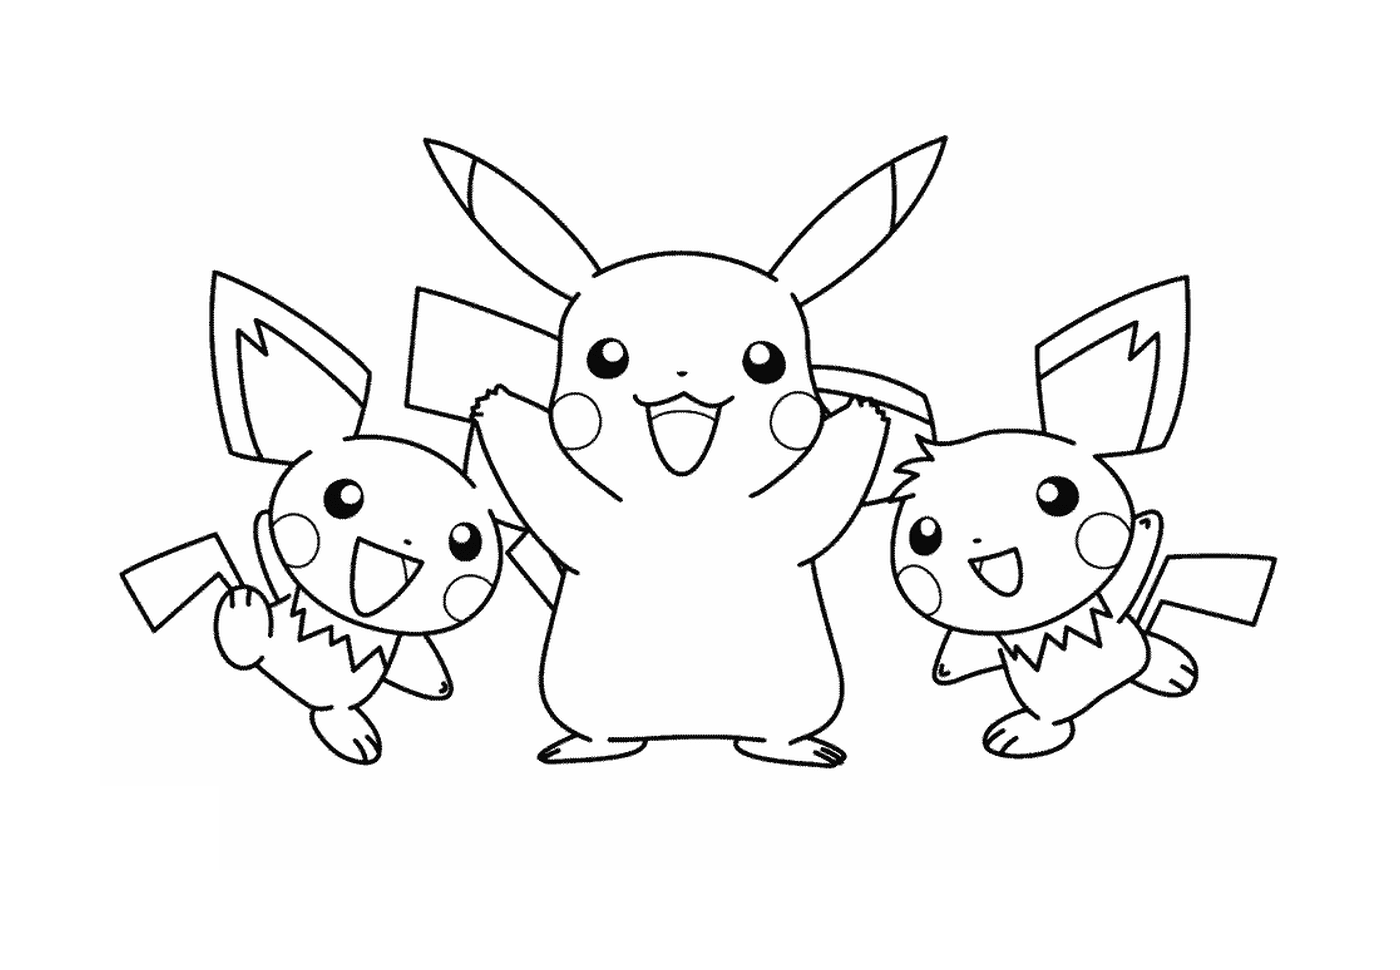  Drei Pikachu-Charaktere zusammen 